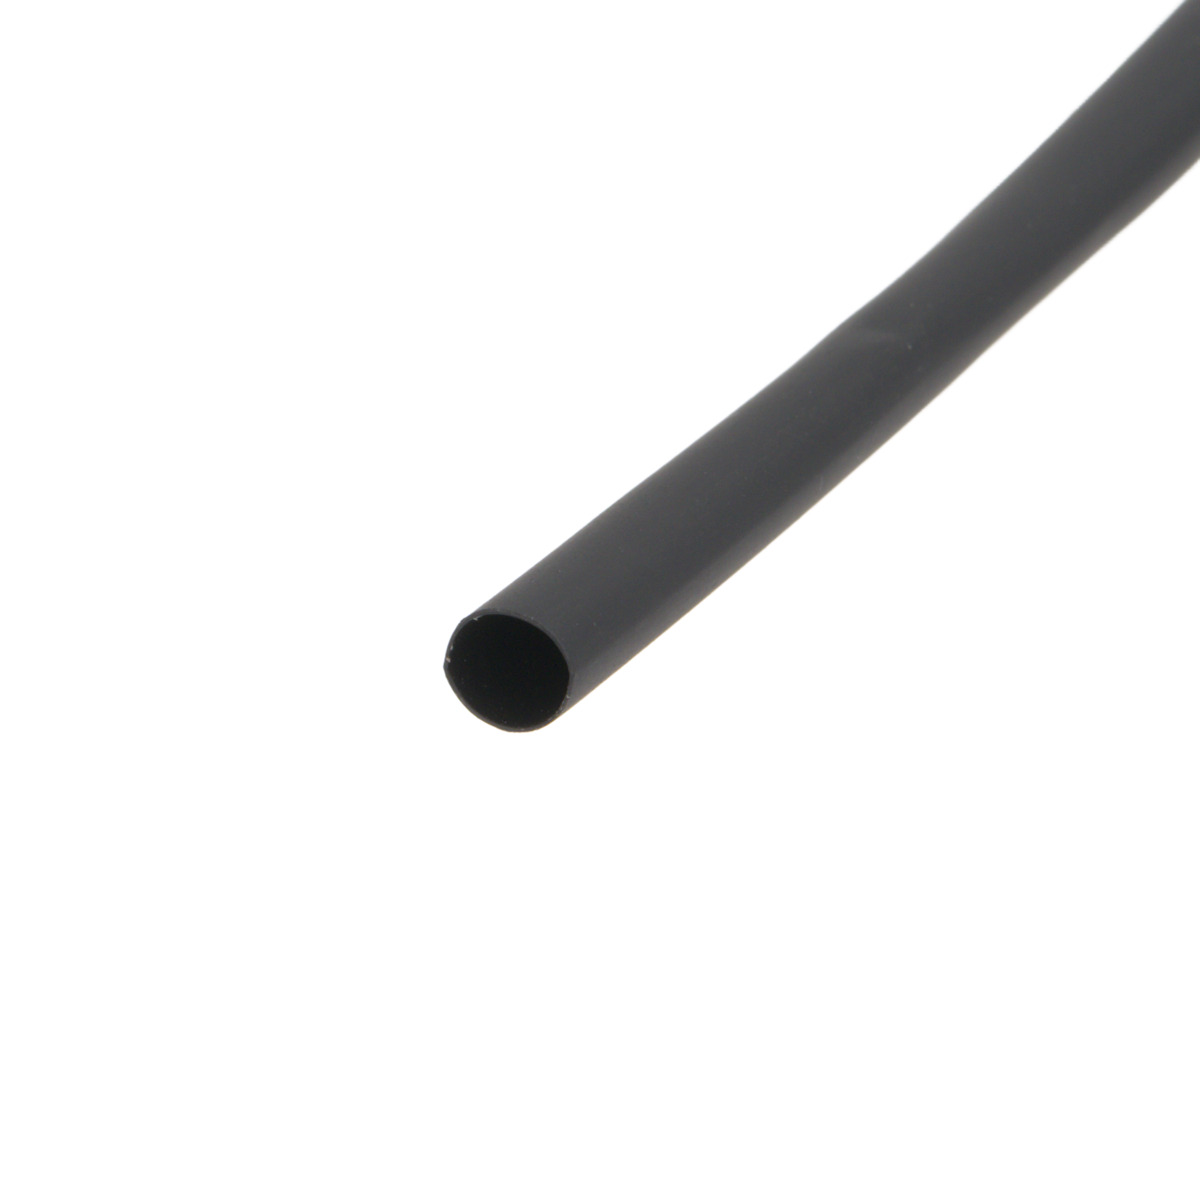 Pack de corte [1.2m] de tubo termorretráctil 2:1 Ø2.4mm negro – Poliolefina libre de halógeno e ignífugo [x25]